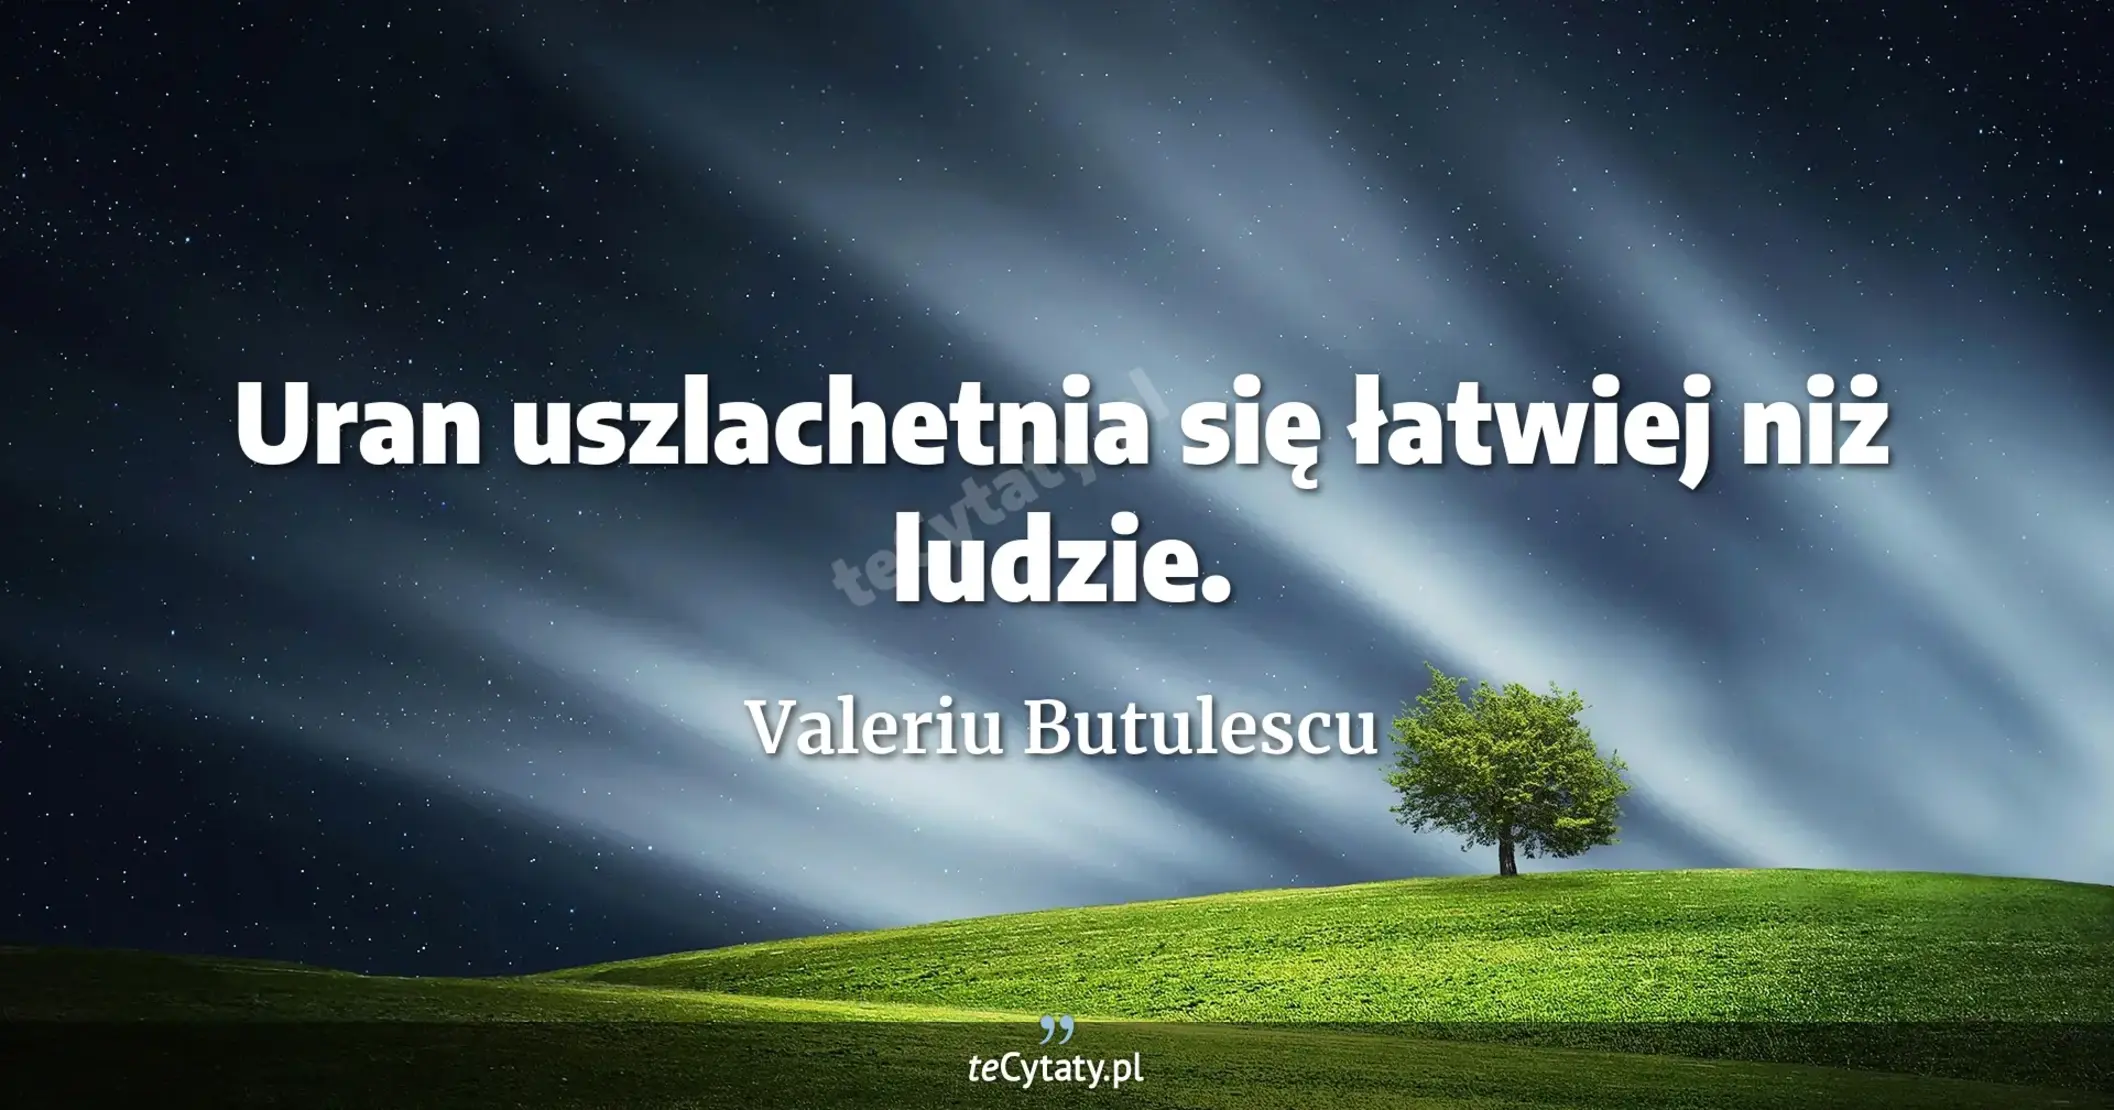 Uran uszlachetnia się łatwiej niż ludzie. - Valeriu Butulescu